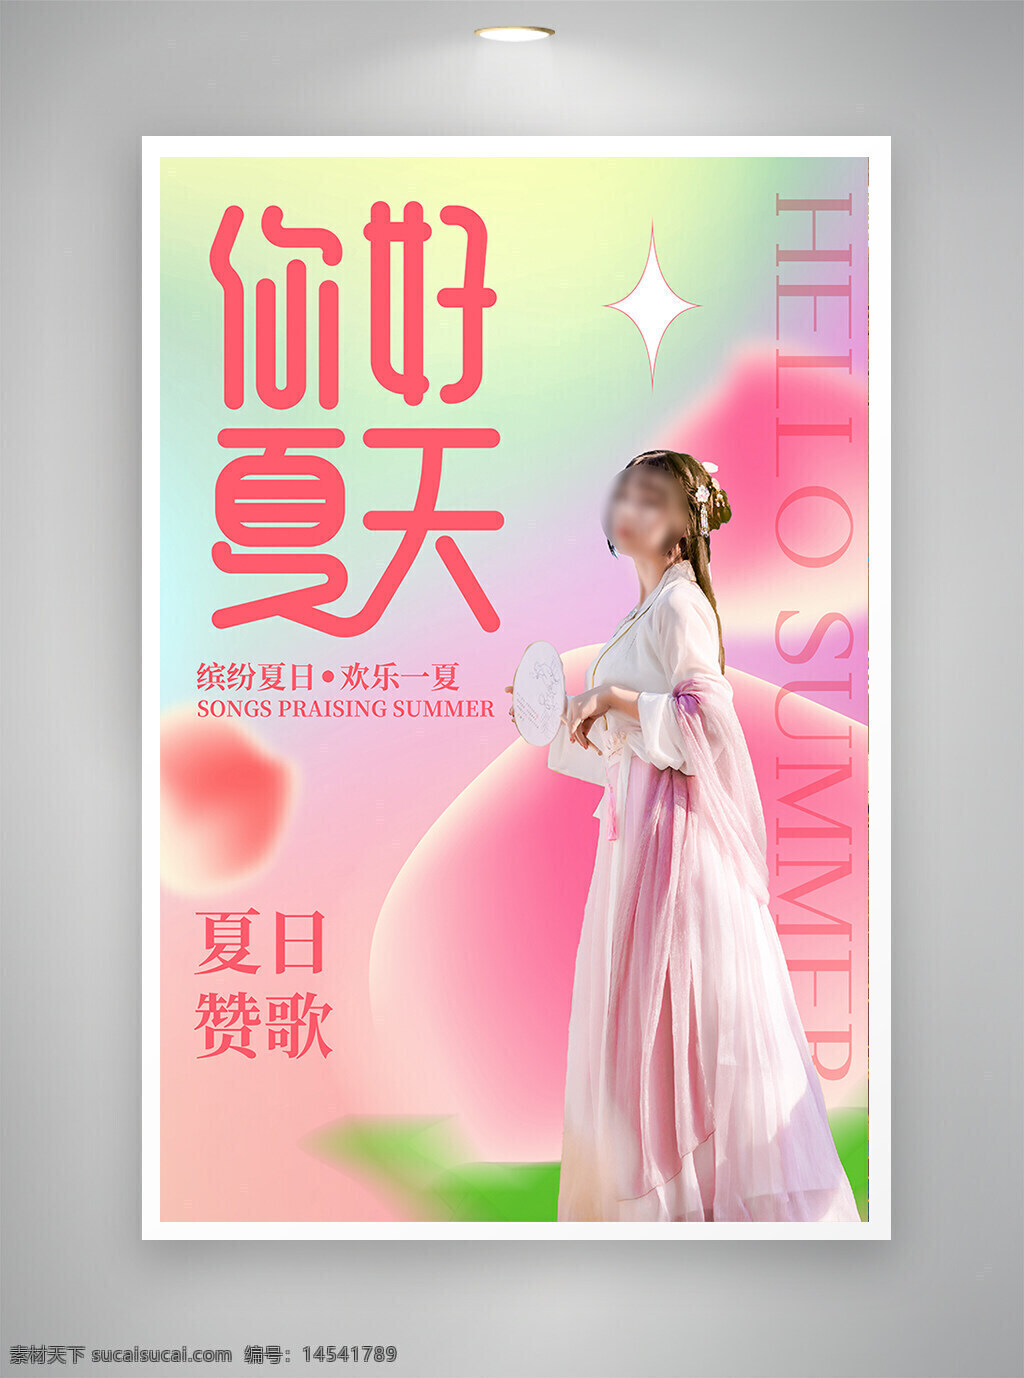 中国风海报 古风海报 促销海报 节日海报 夏天海报